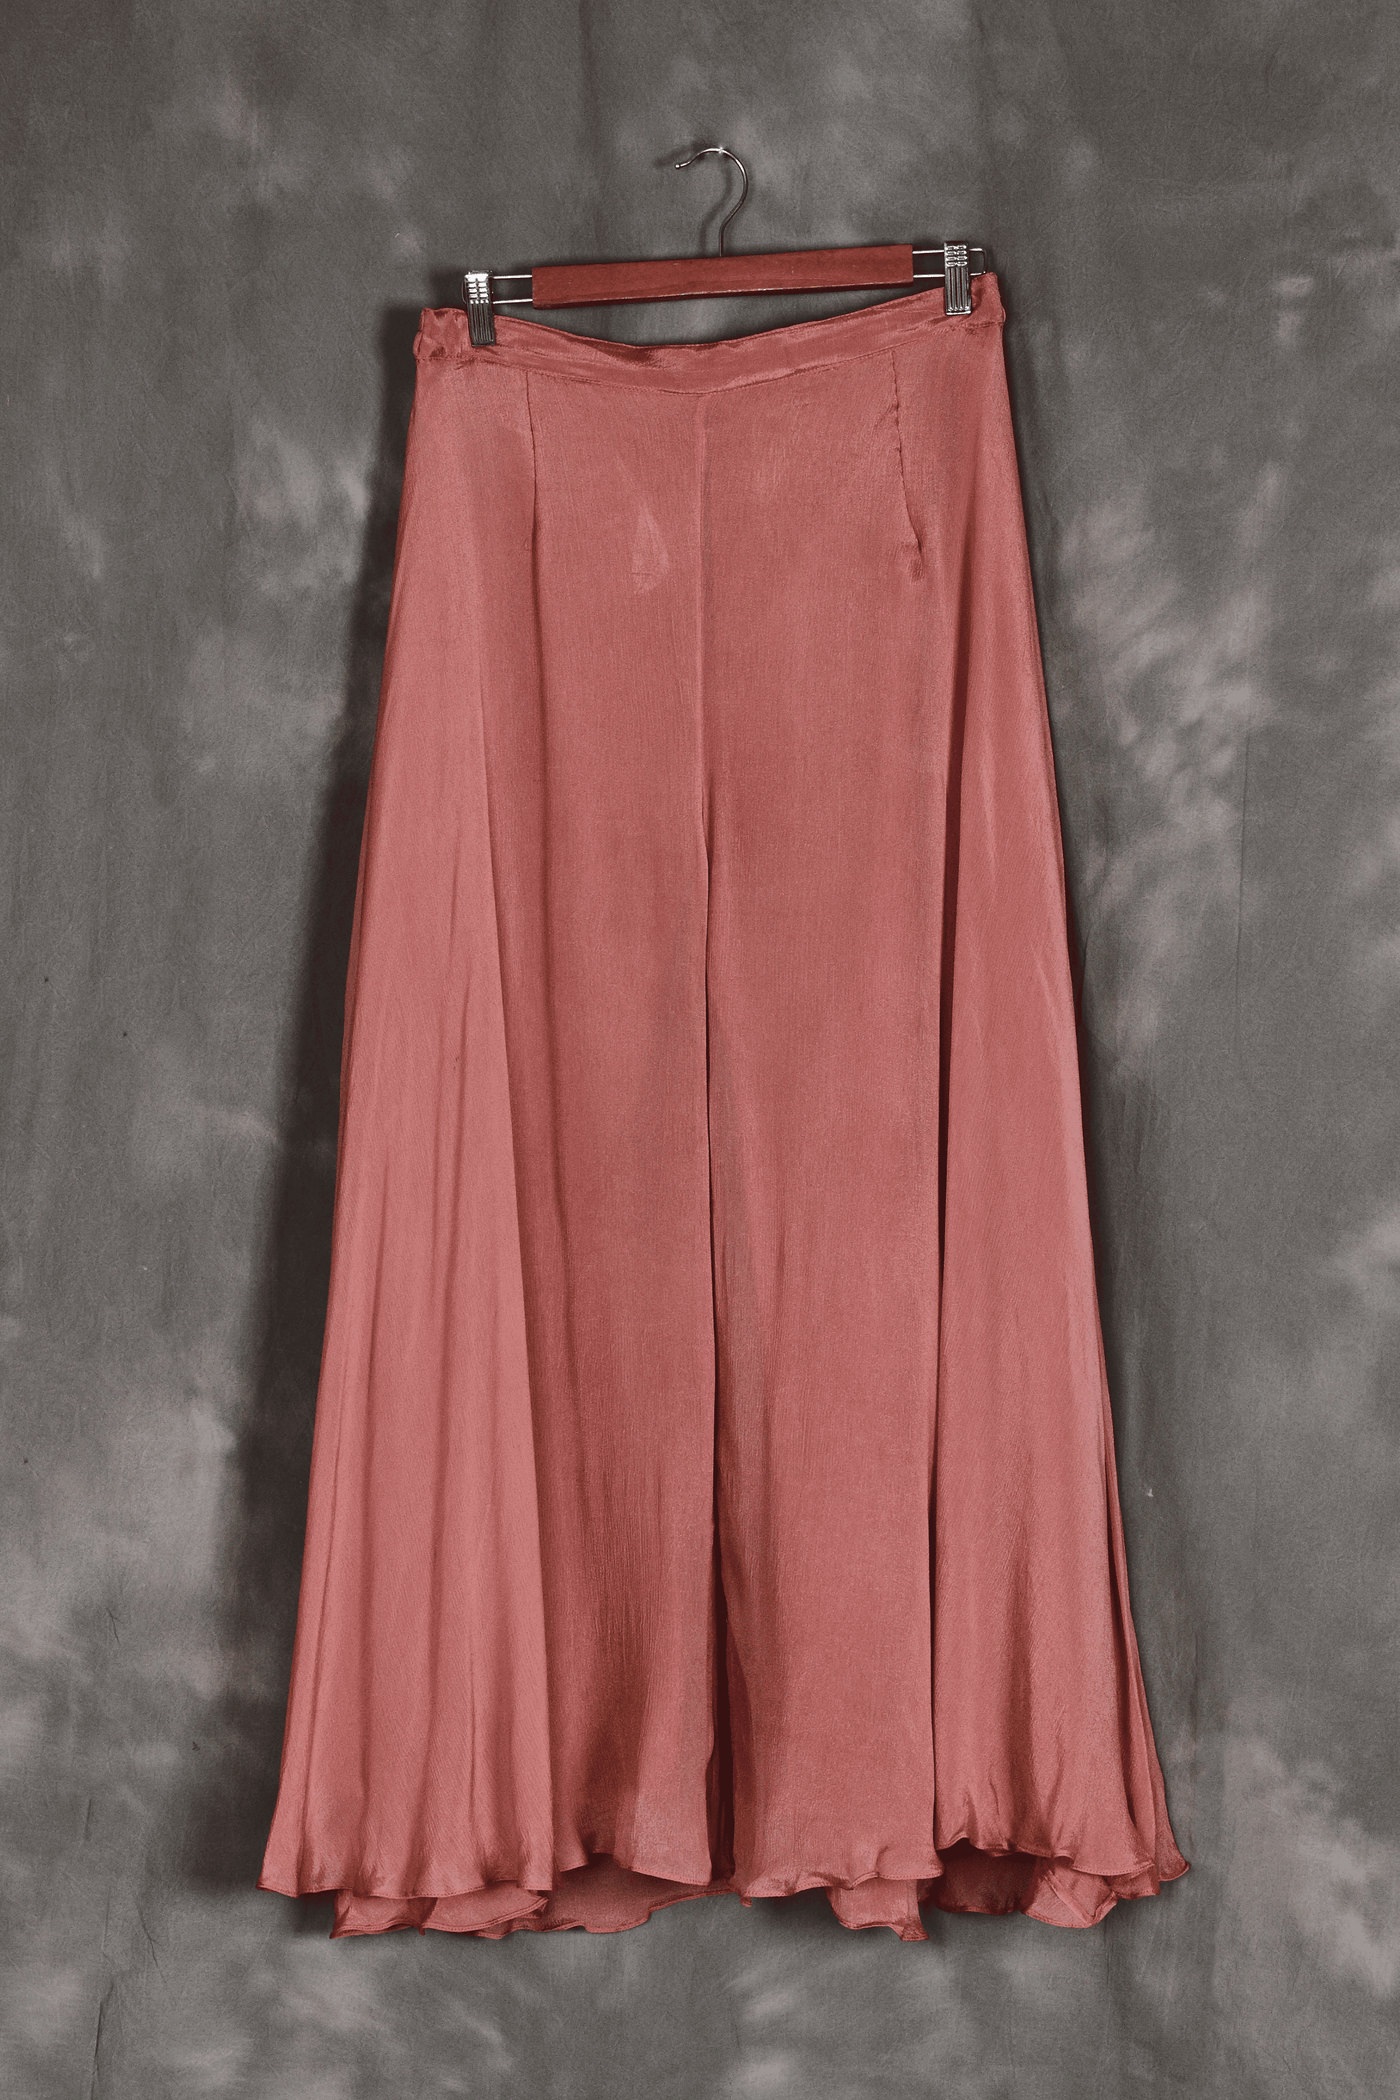 Foxy pink muslin hand embroidery kurta set